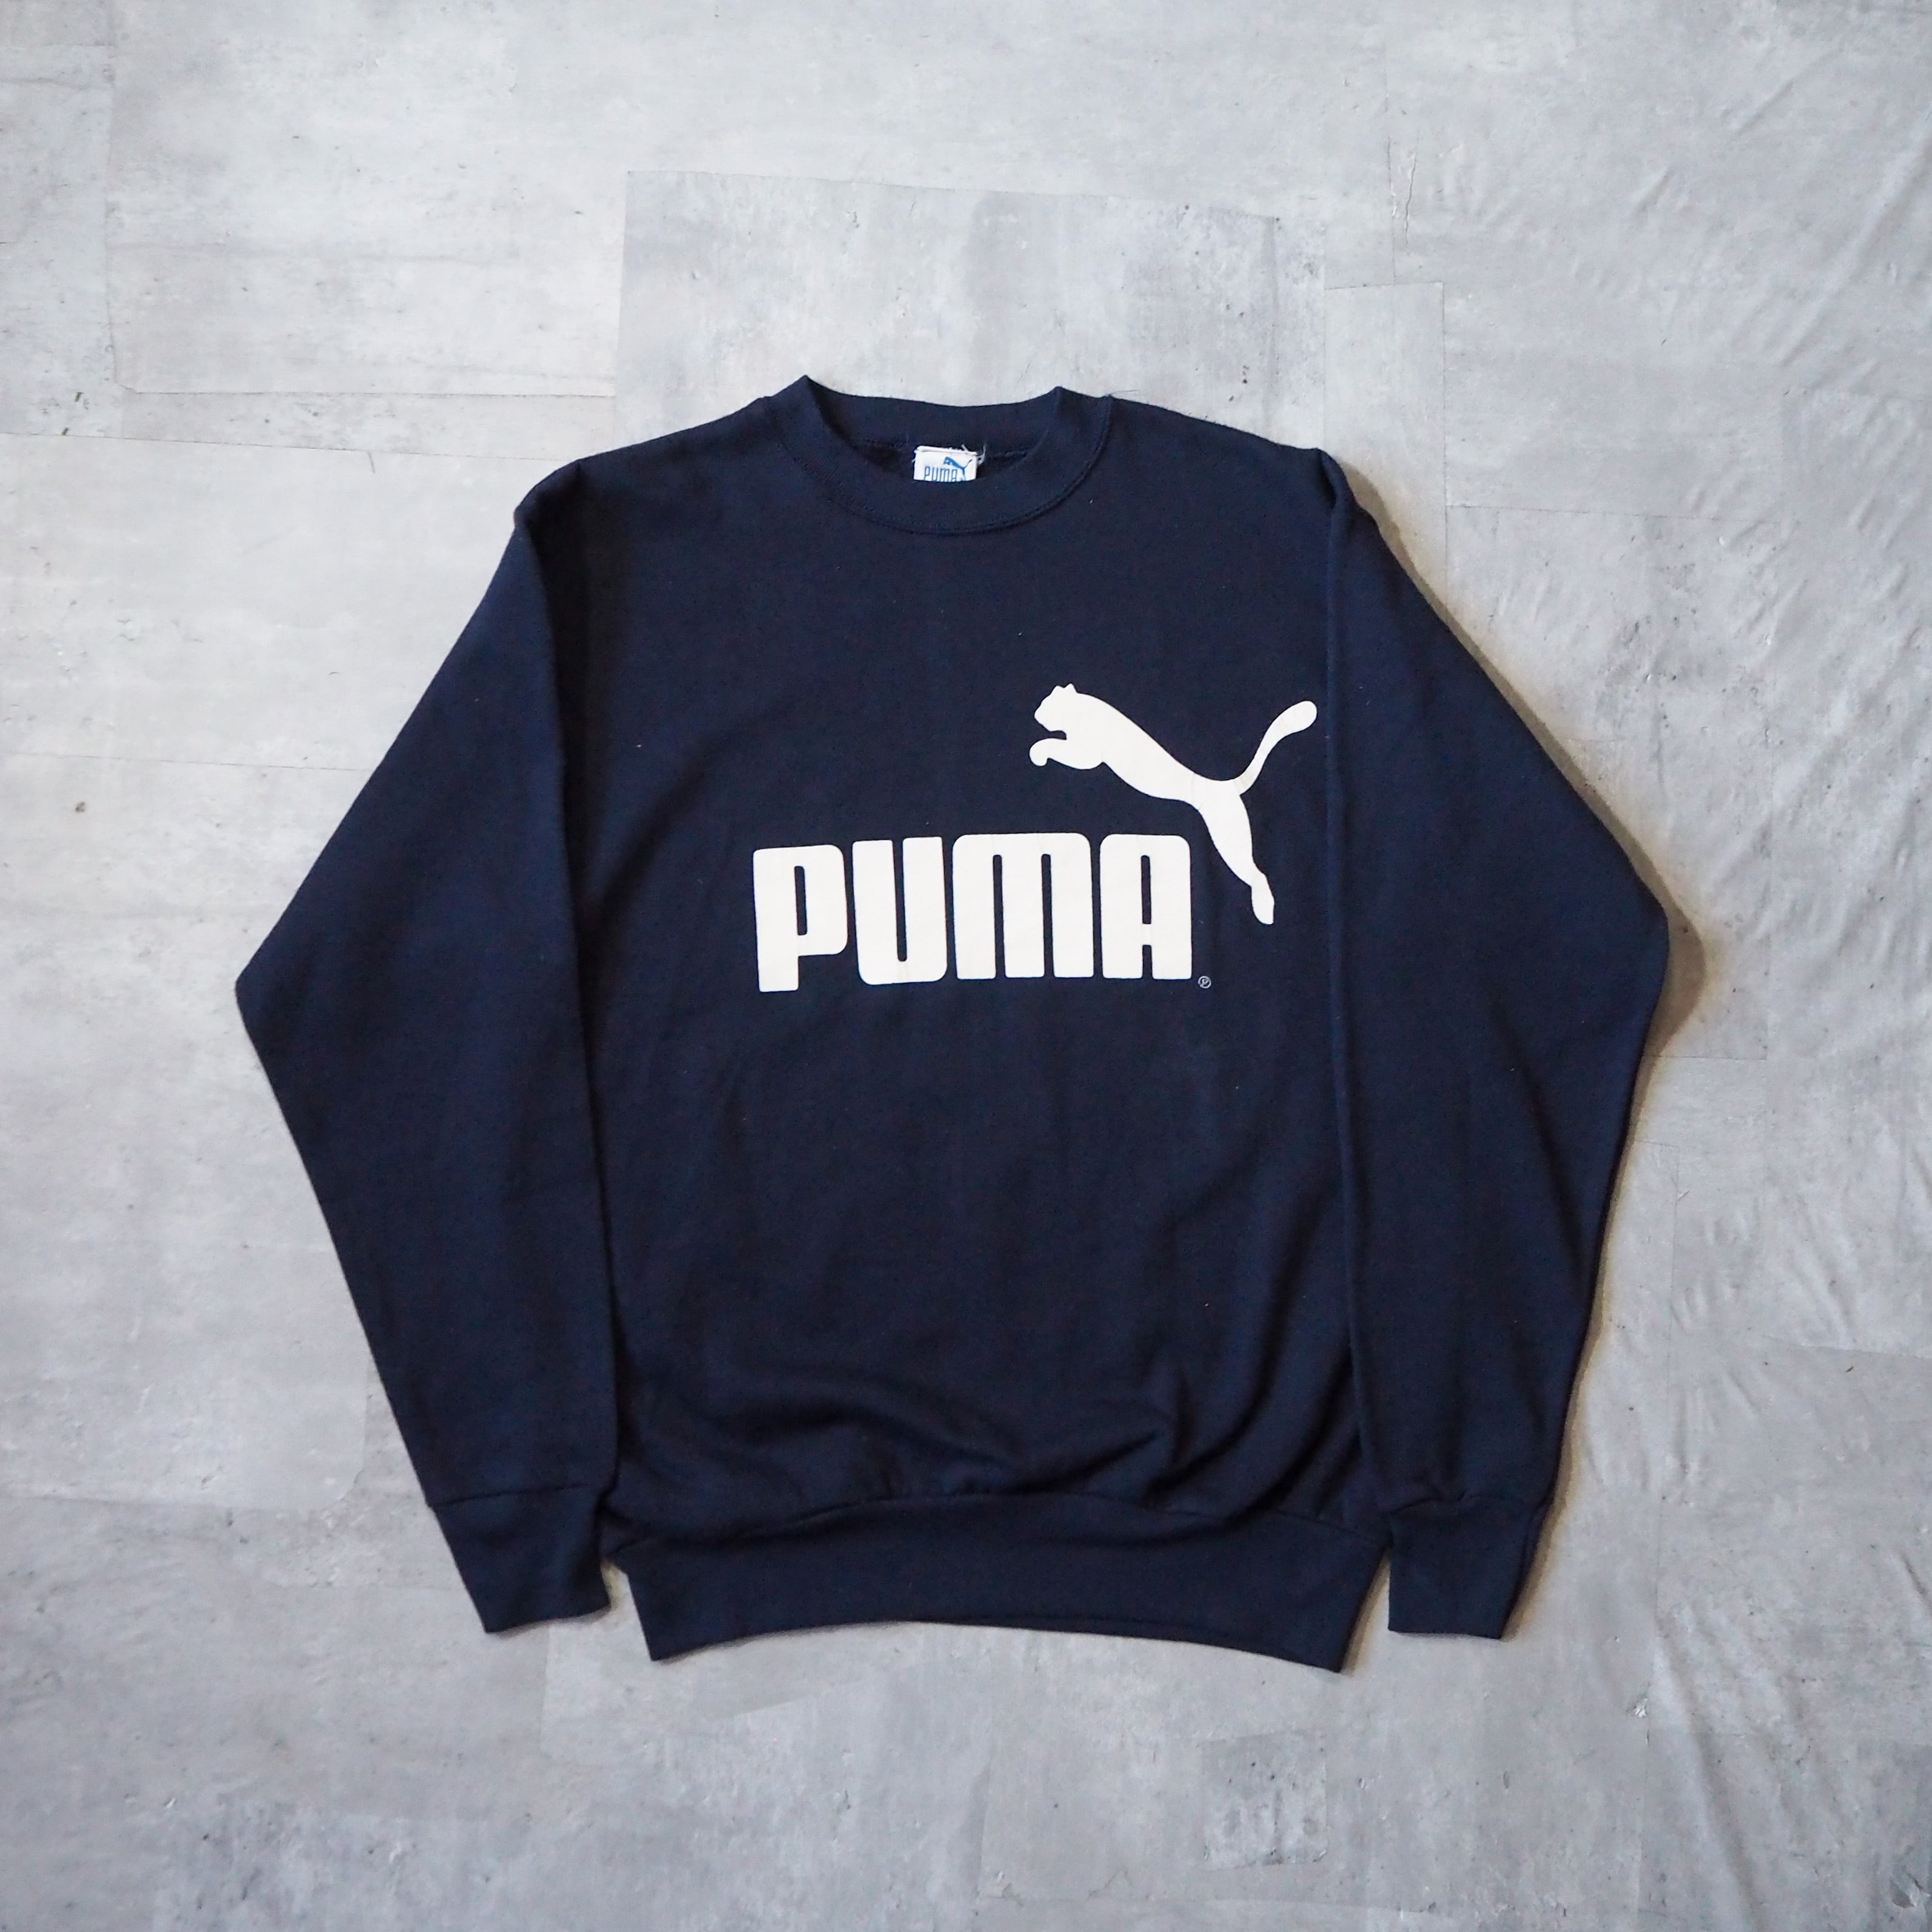 80s-90s “PUMA” logo dark navy sweat shirt made in USA 80年代 90